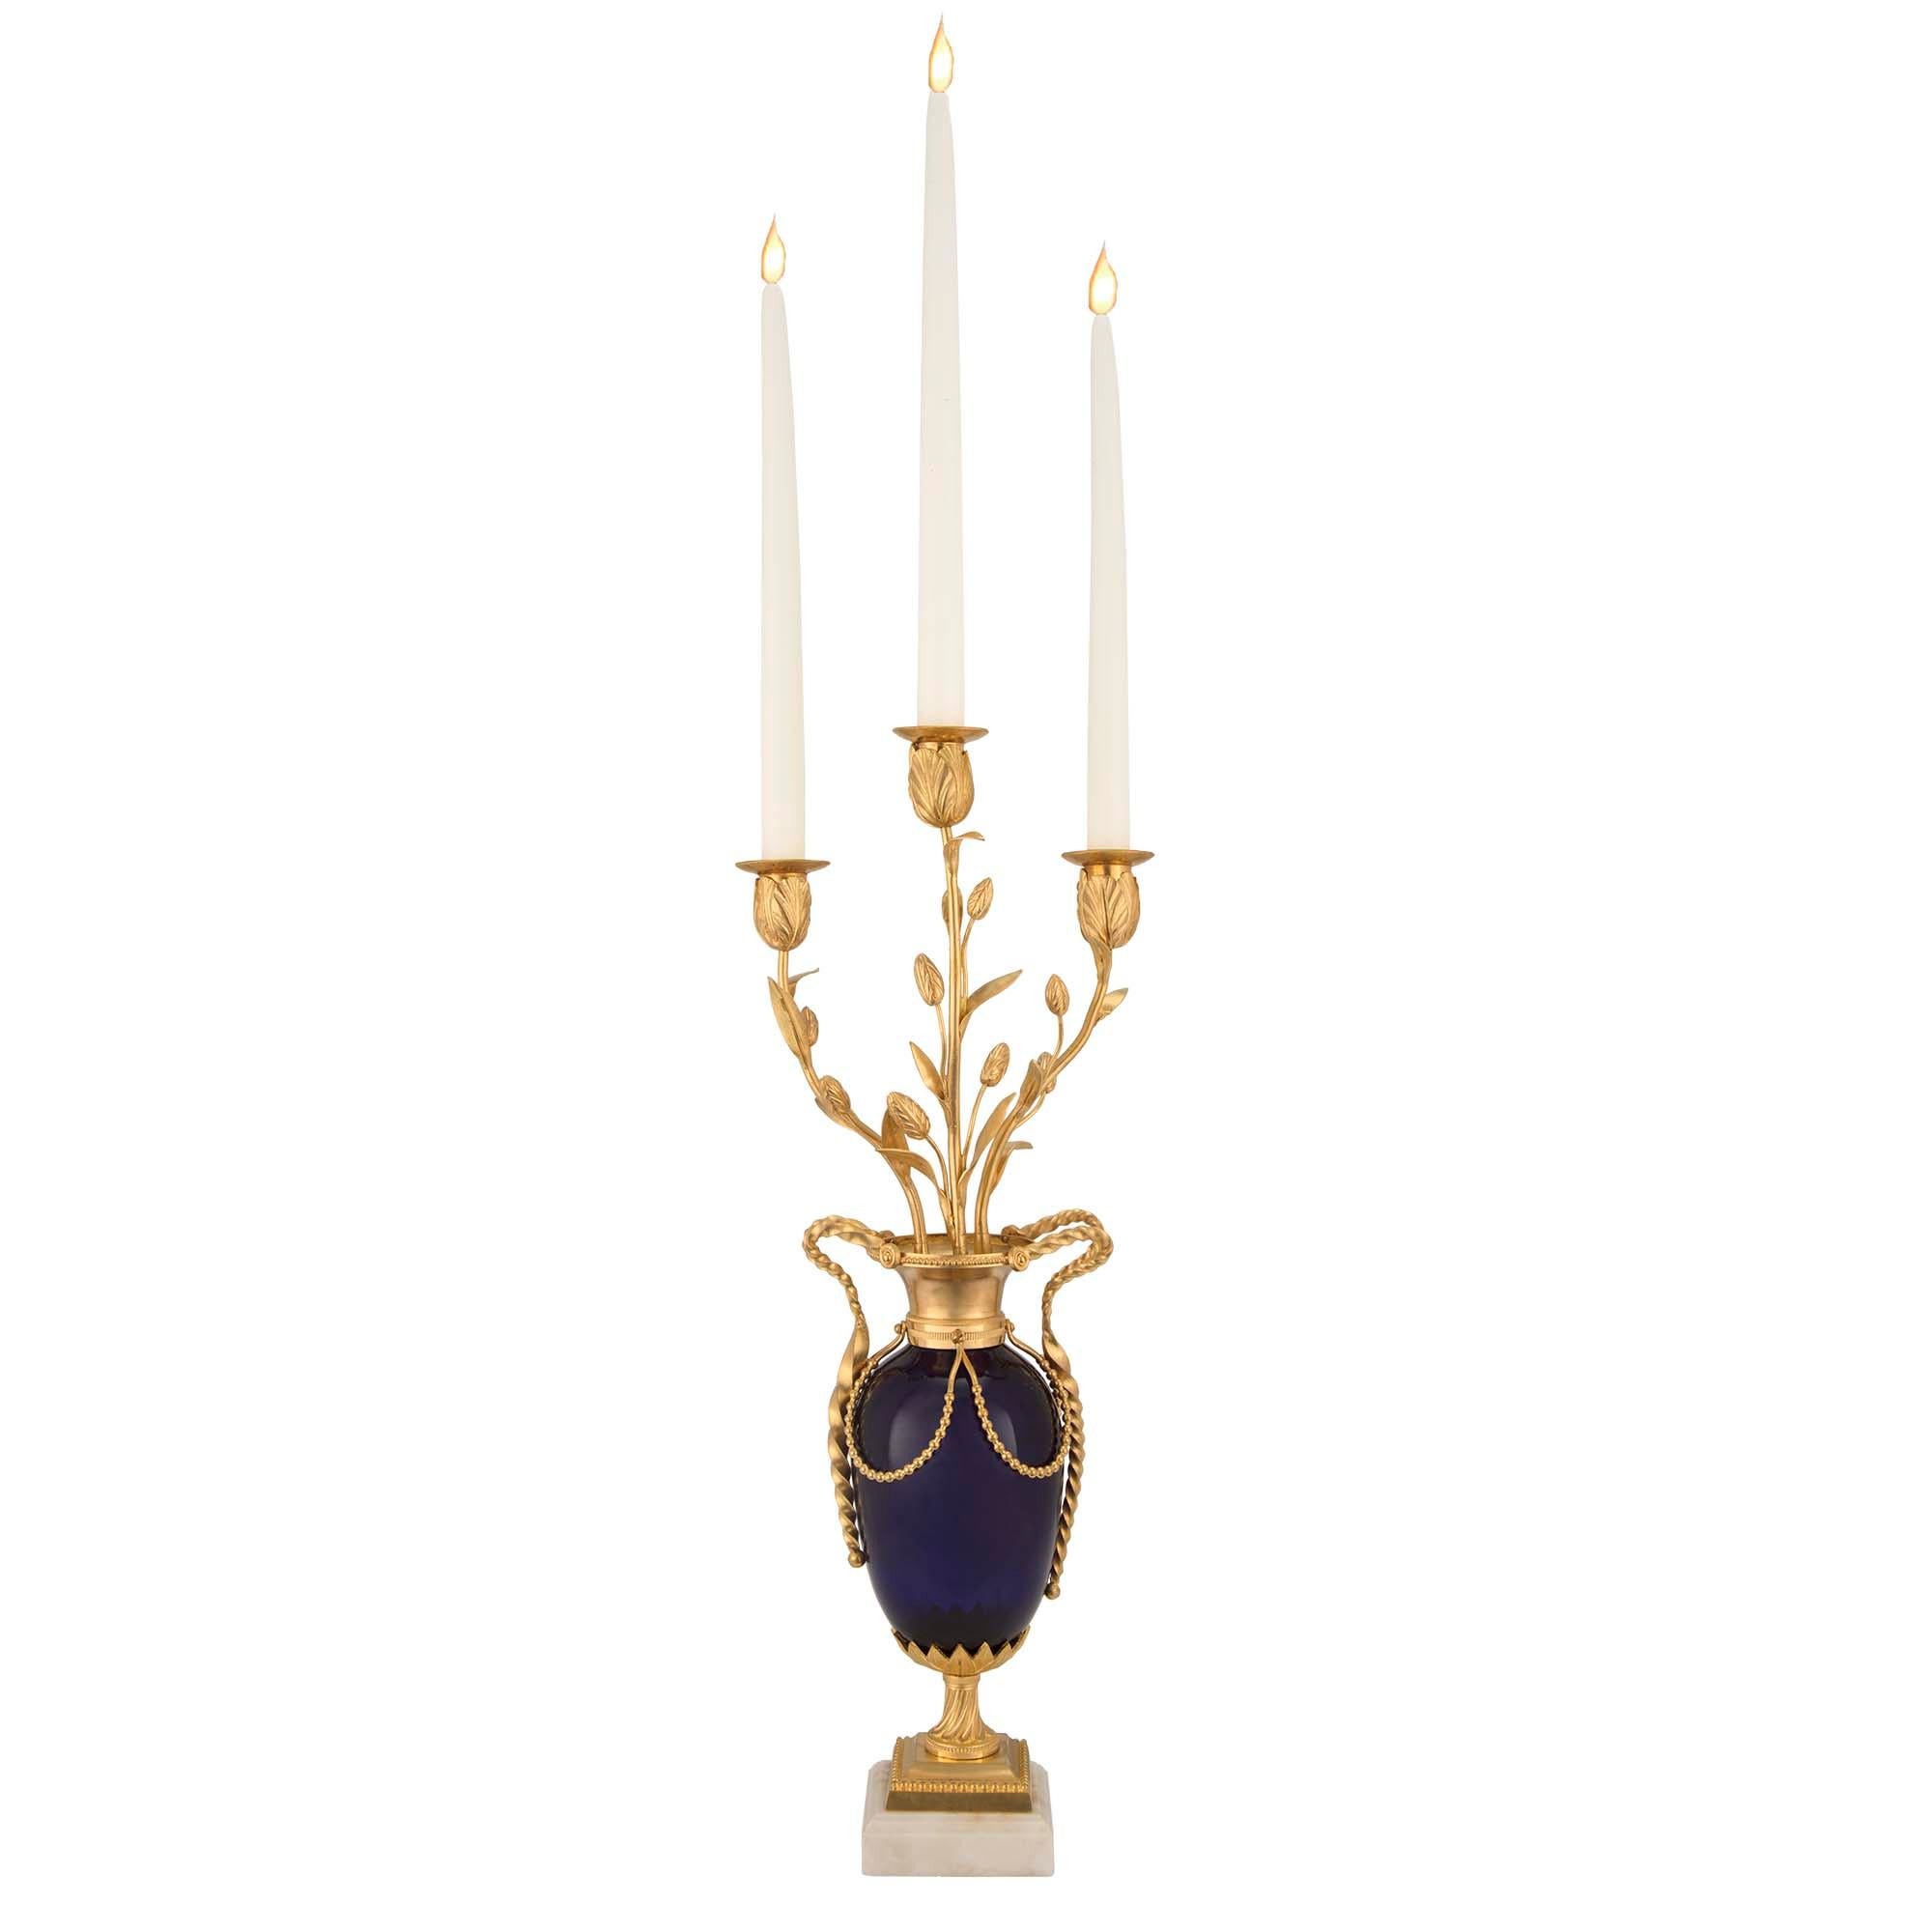 Une très élégante paire de candélabres à trois bras de style Louis XVI, datant du milieu du XIXe siècle, en verre bleu cobalt, bronze doré et marbre blanc de Carrare. Chaque candélabre repose sur une base en marbre blanc de Carrare et ormolu, sous